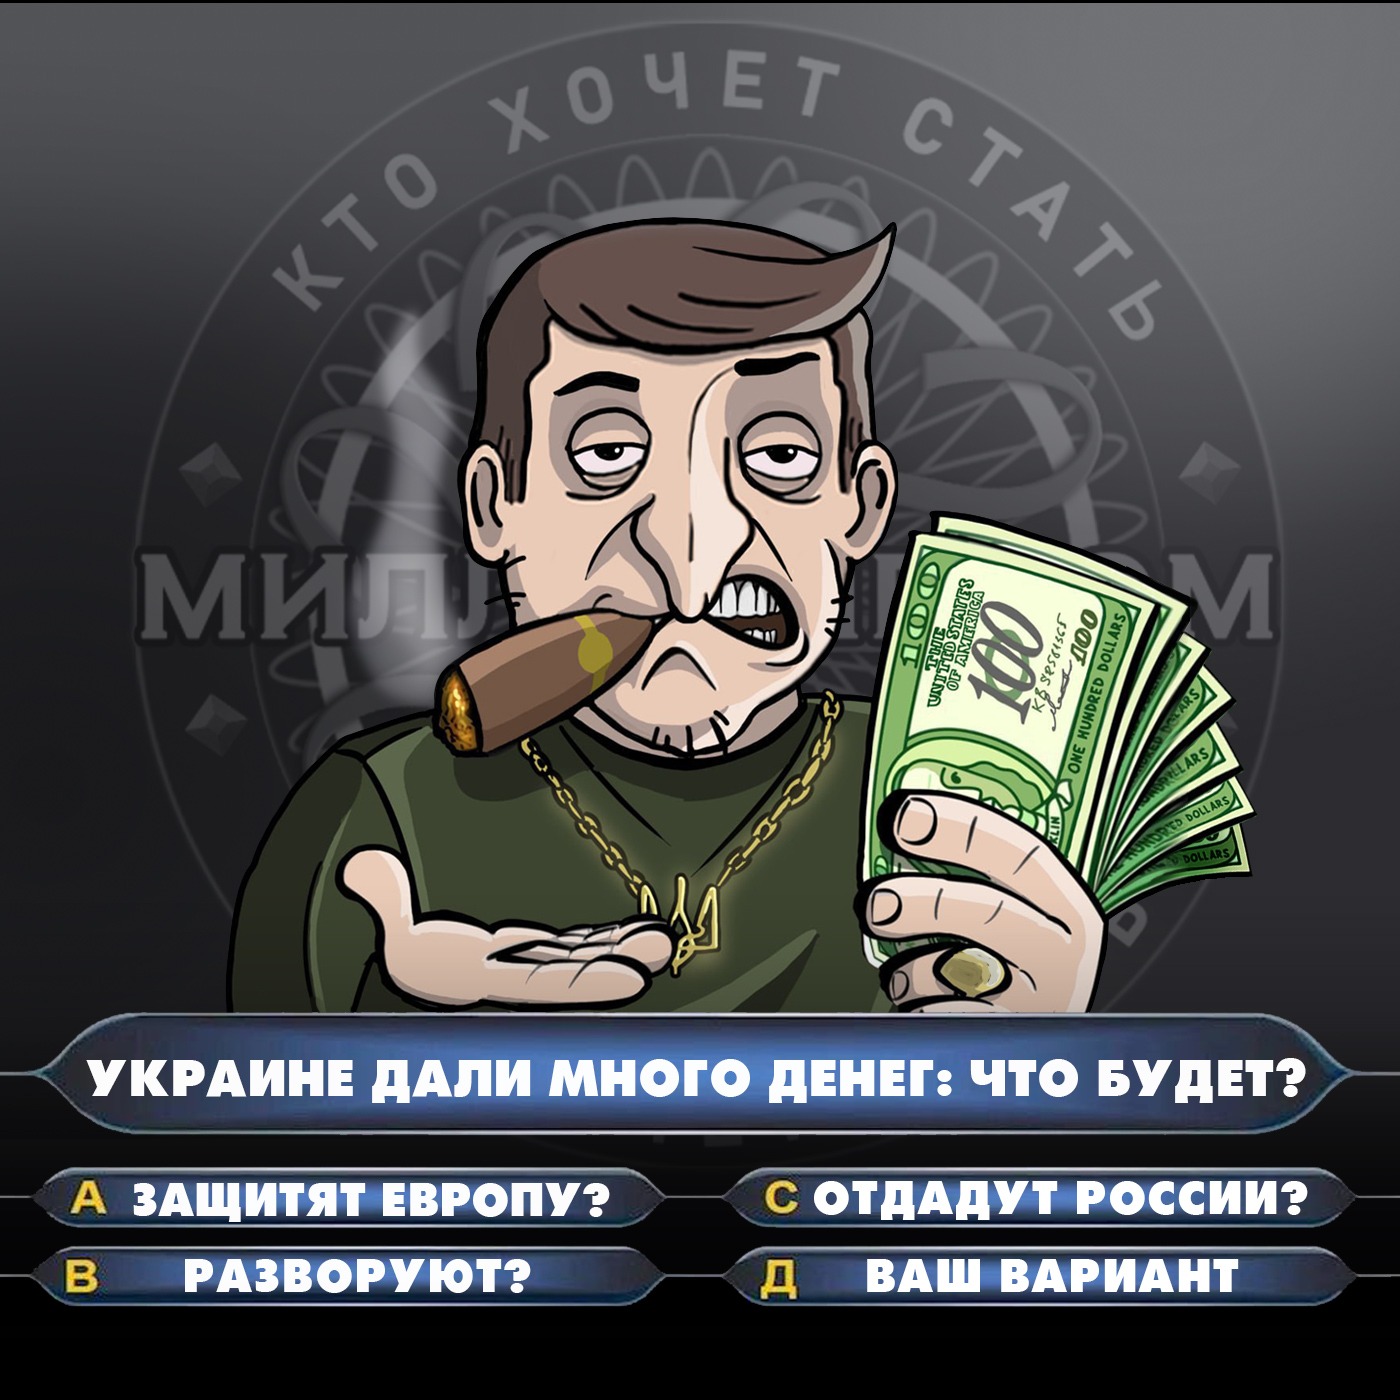 Украине дали много денег: что будет?